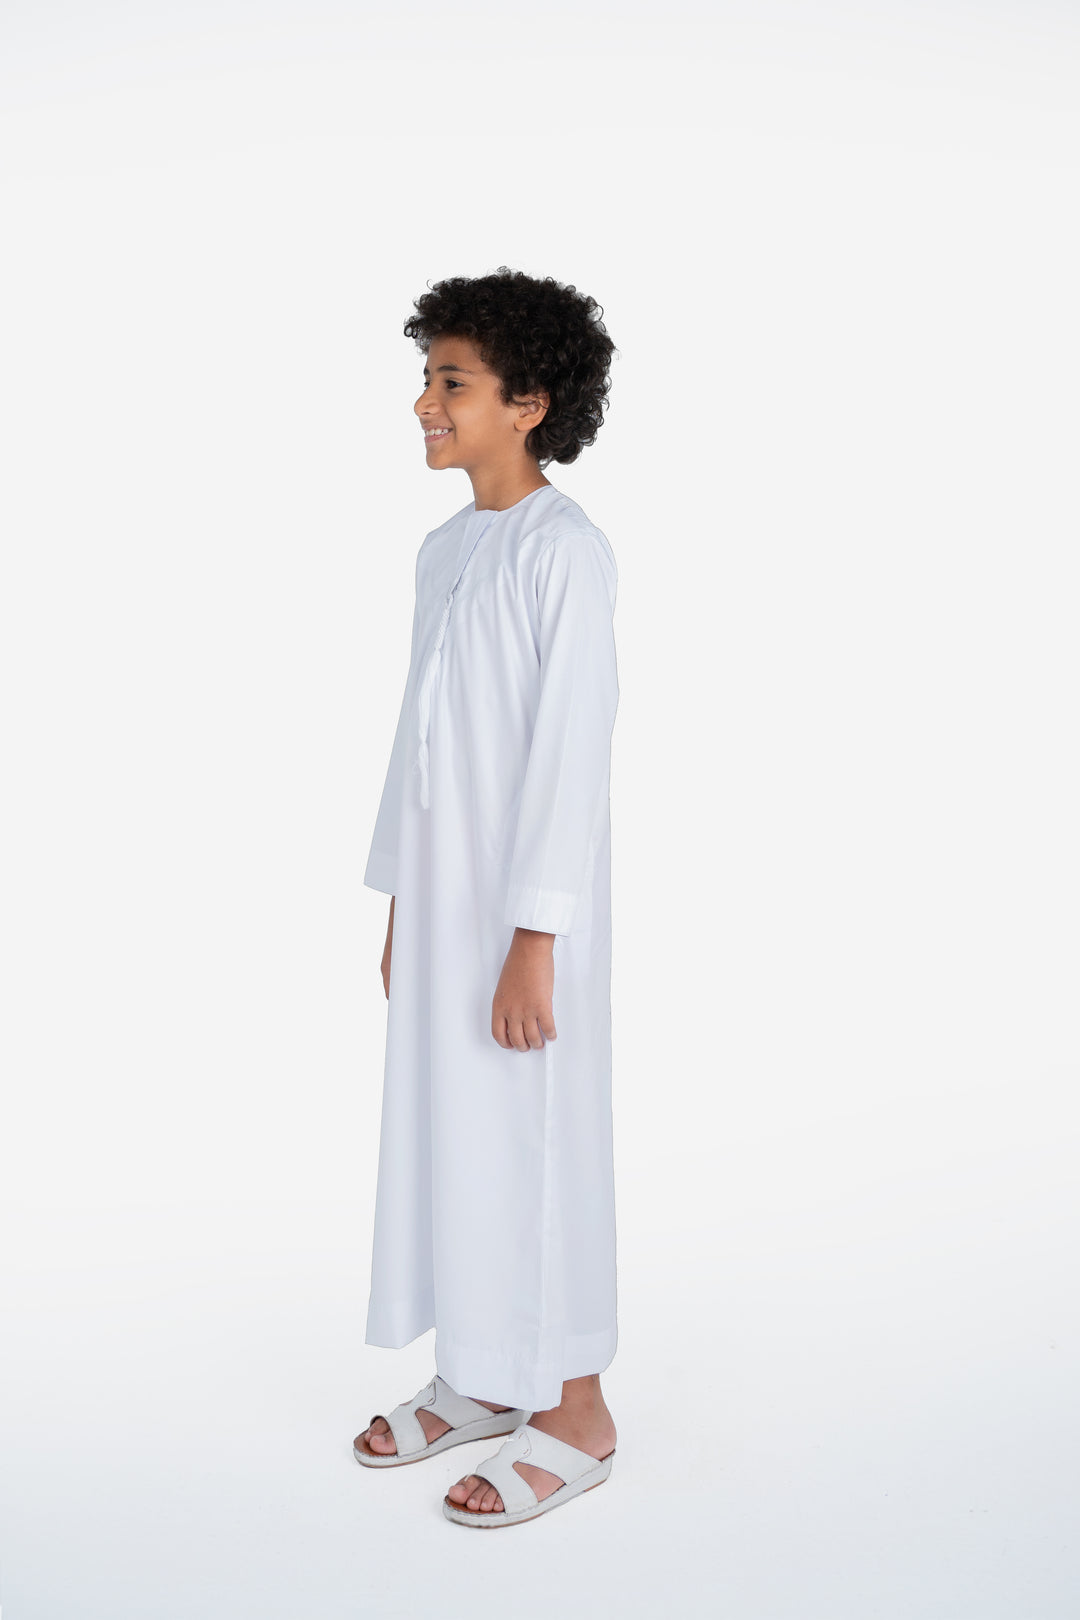 Kids Emirati Thobe- White